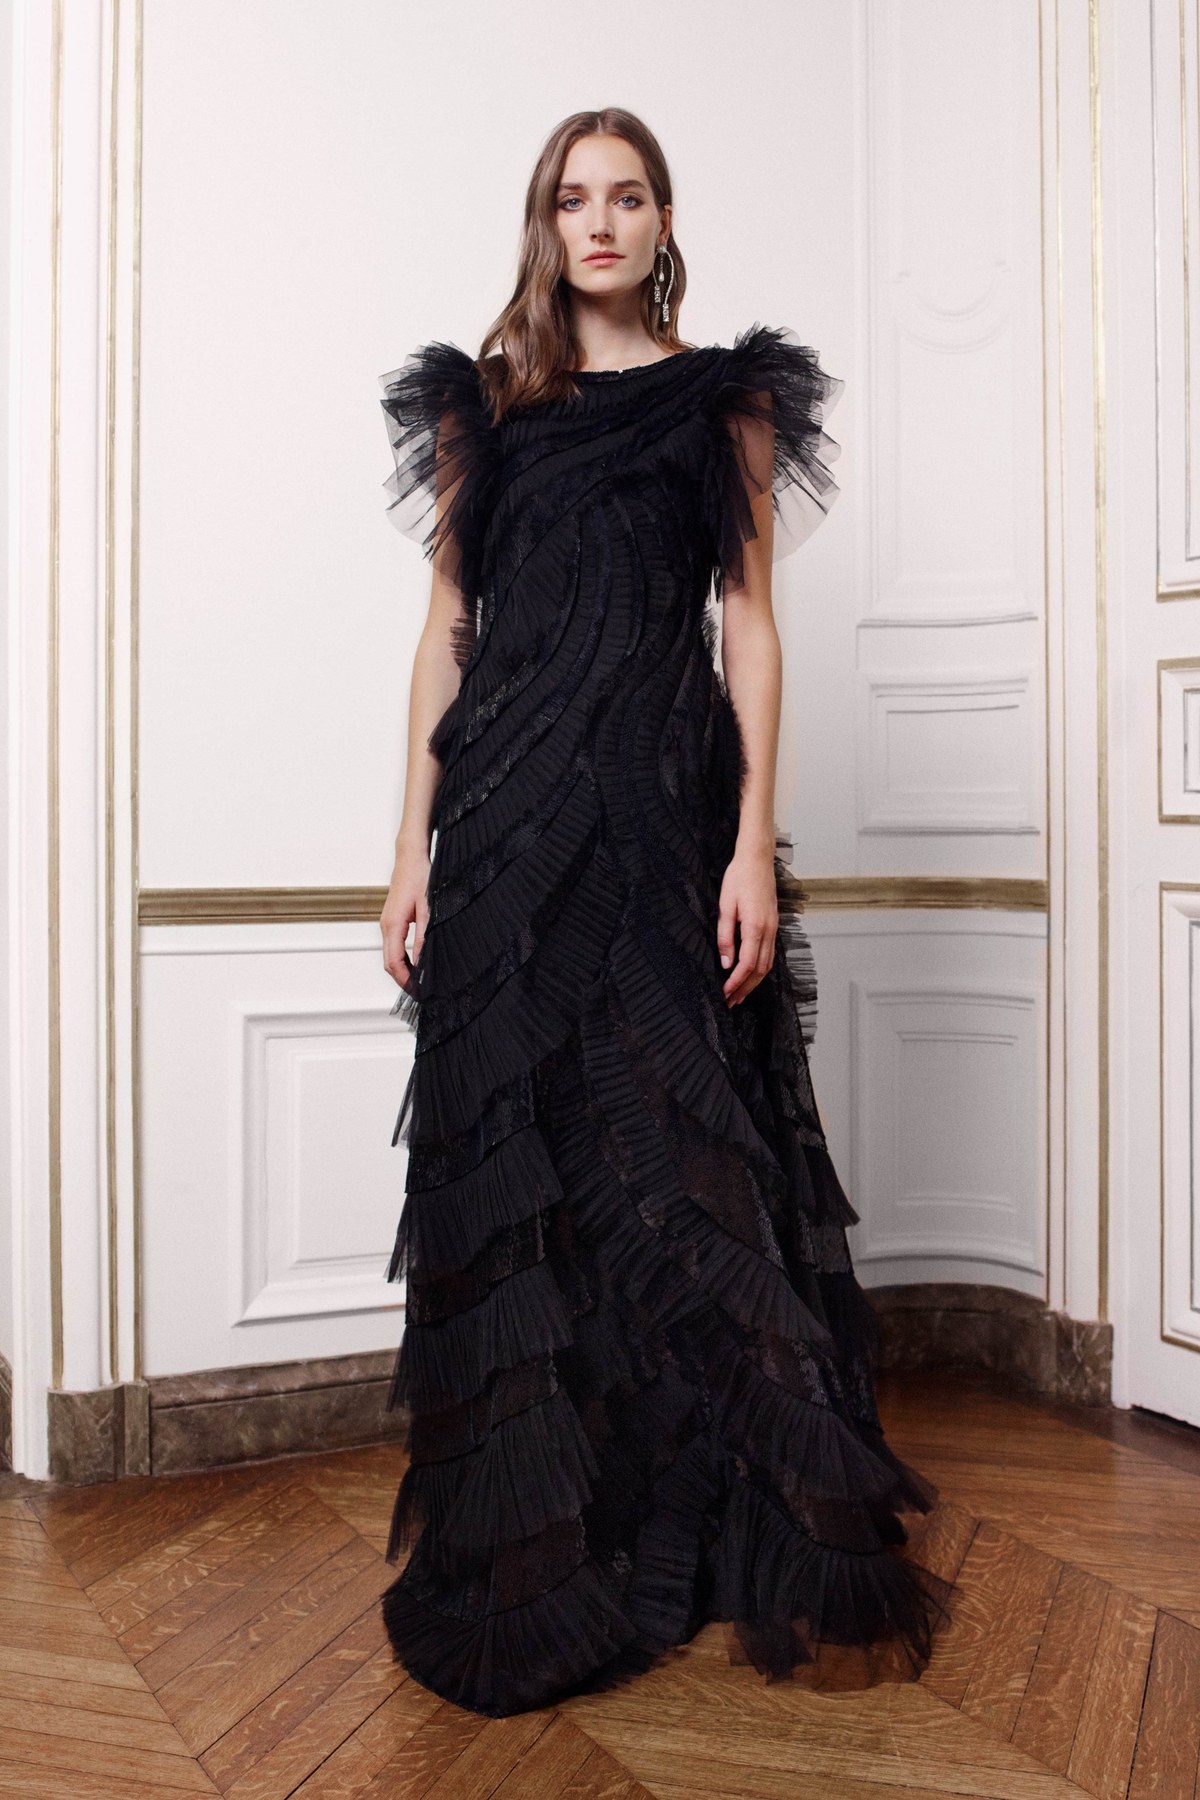 Alberta Ferretti Limited Edition 2019 Haute Couture Lookbook